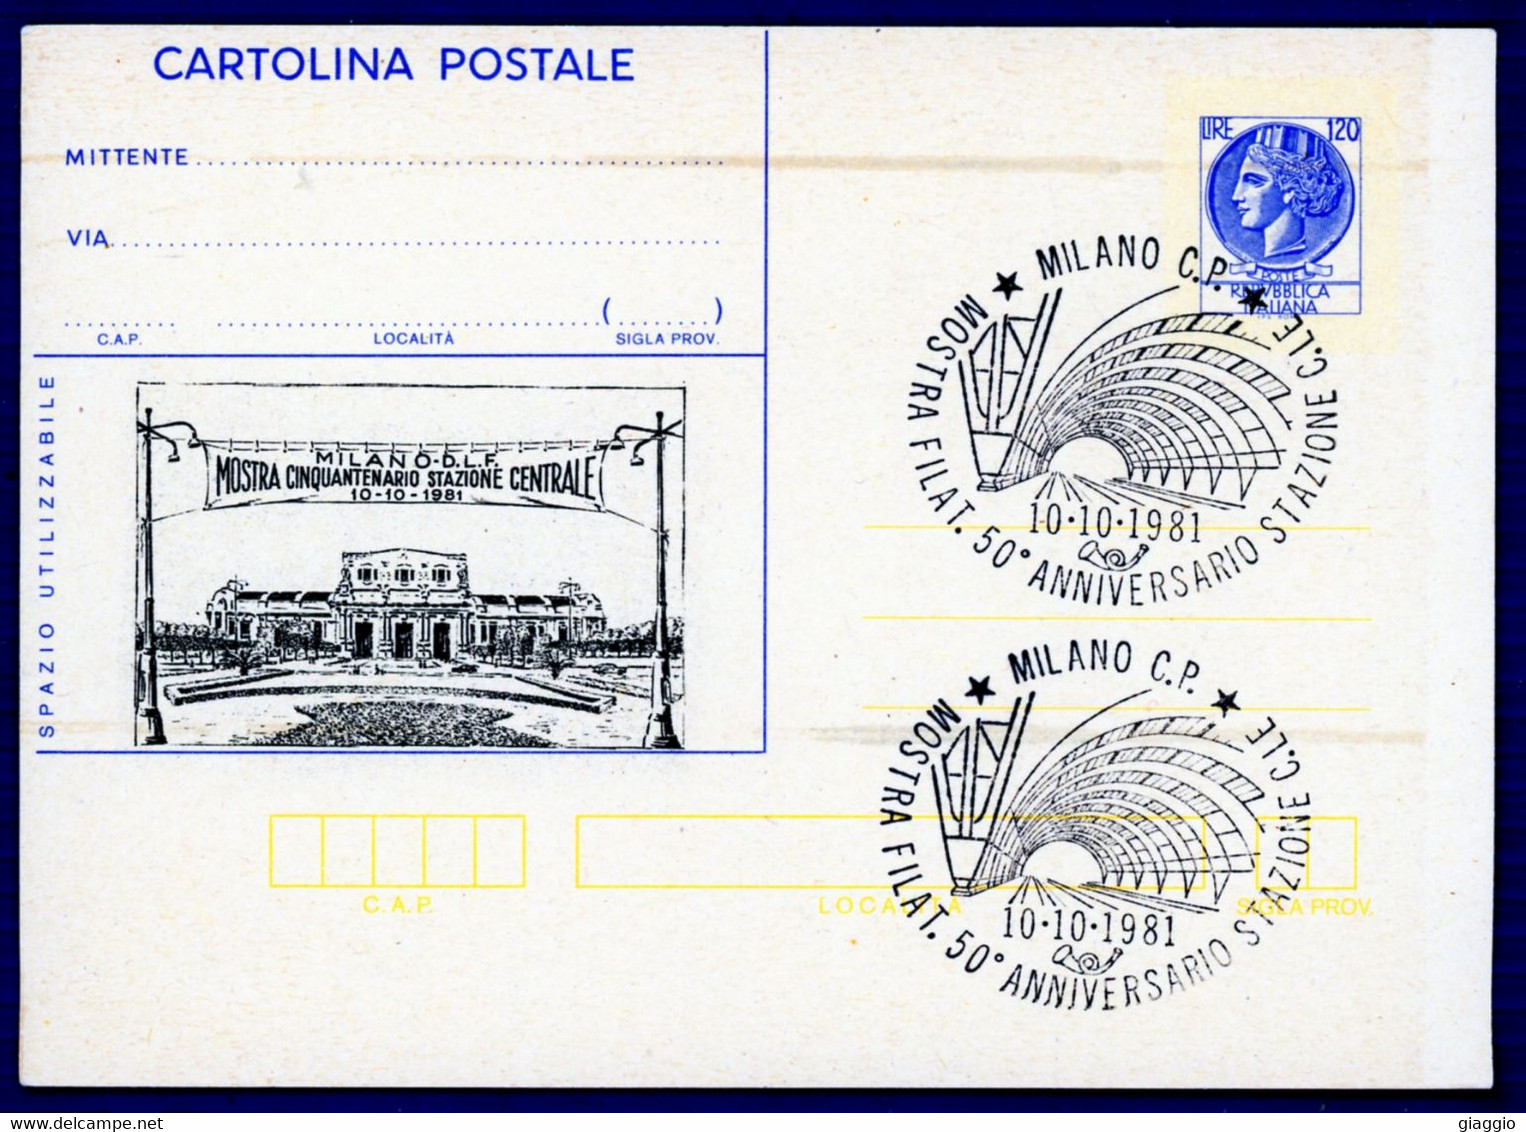 °°° Francobolli N. 4337 - Cartolina Postale Con Annullo Speciale Nuova °°° - Entero Postal